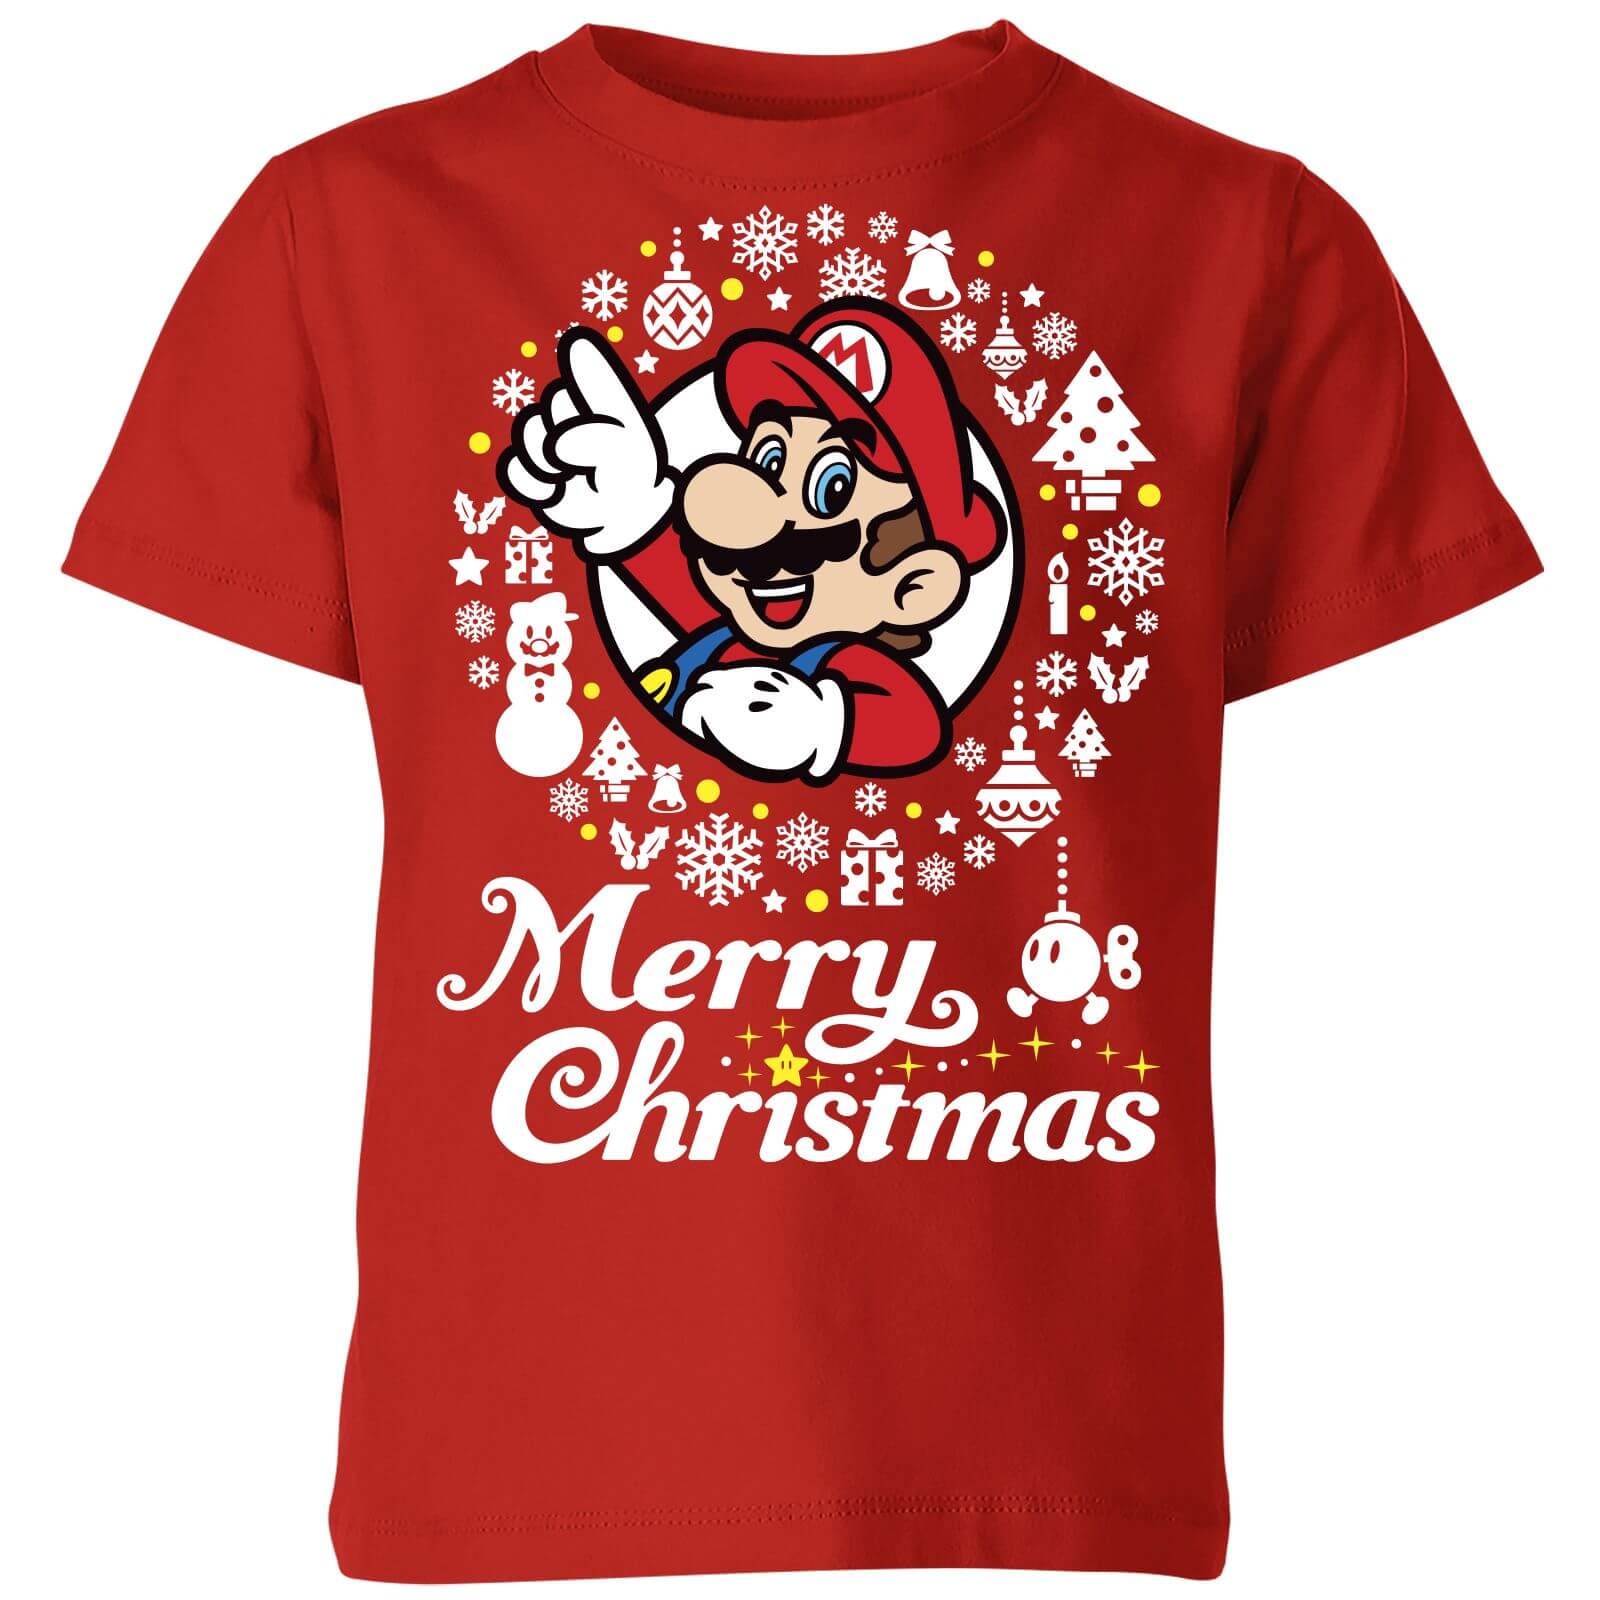 Nintendo Super Mario Merry Christmas White Wreath Kids' T-Shirt - Red - 7-8 Years